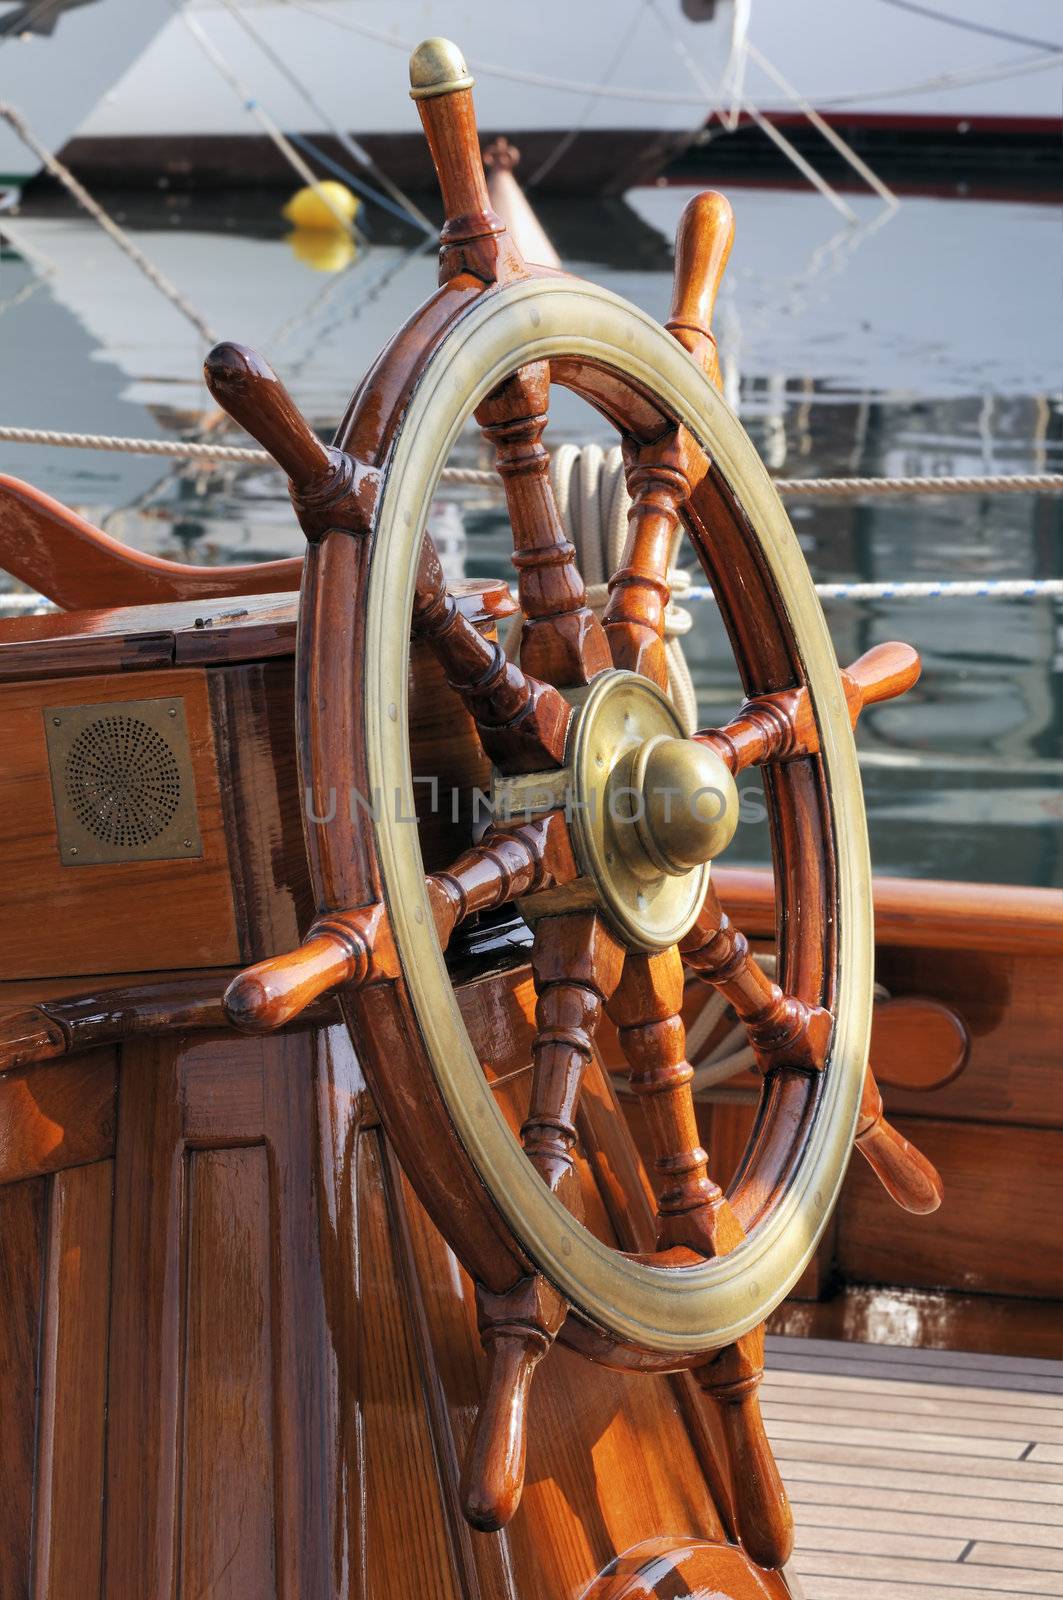 Steering wheel on a wooden boat